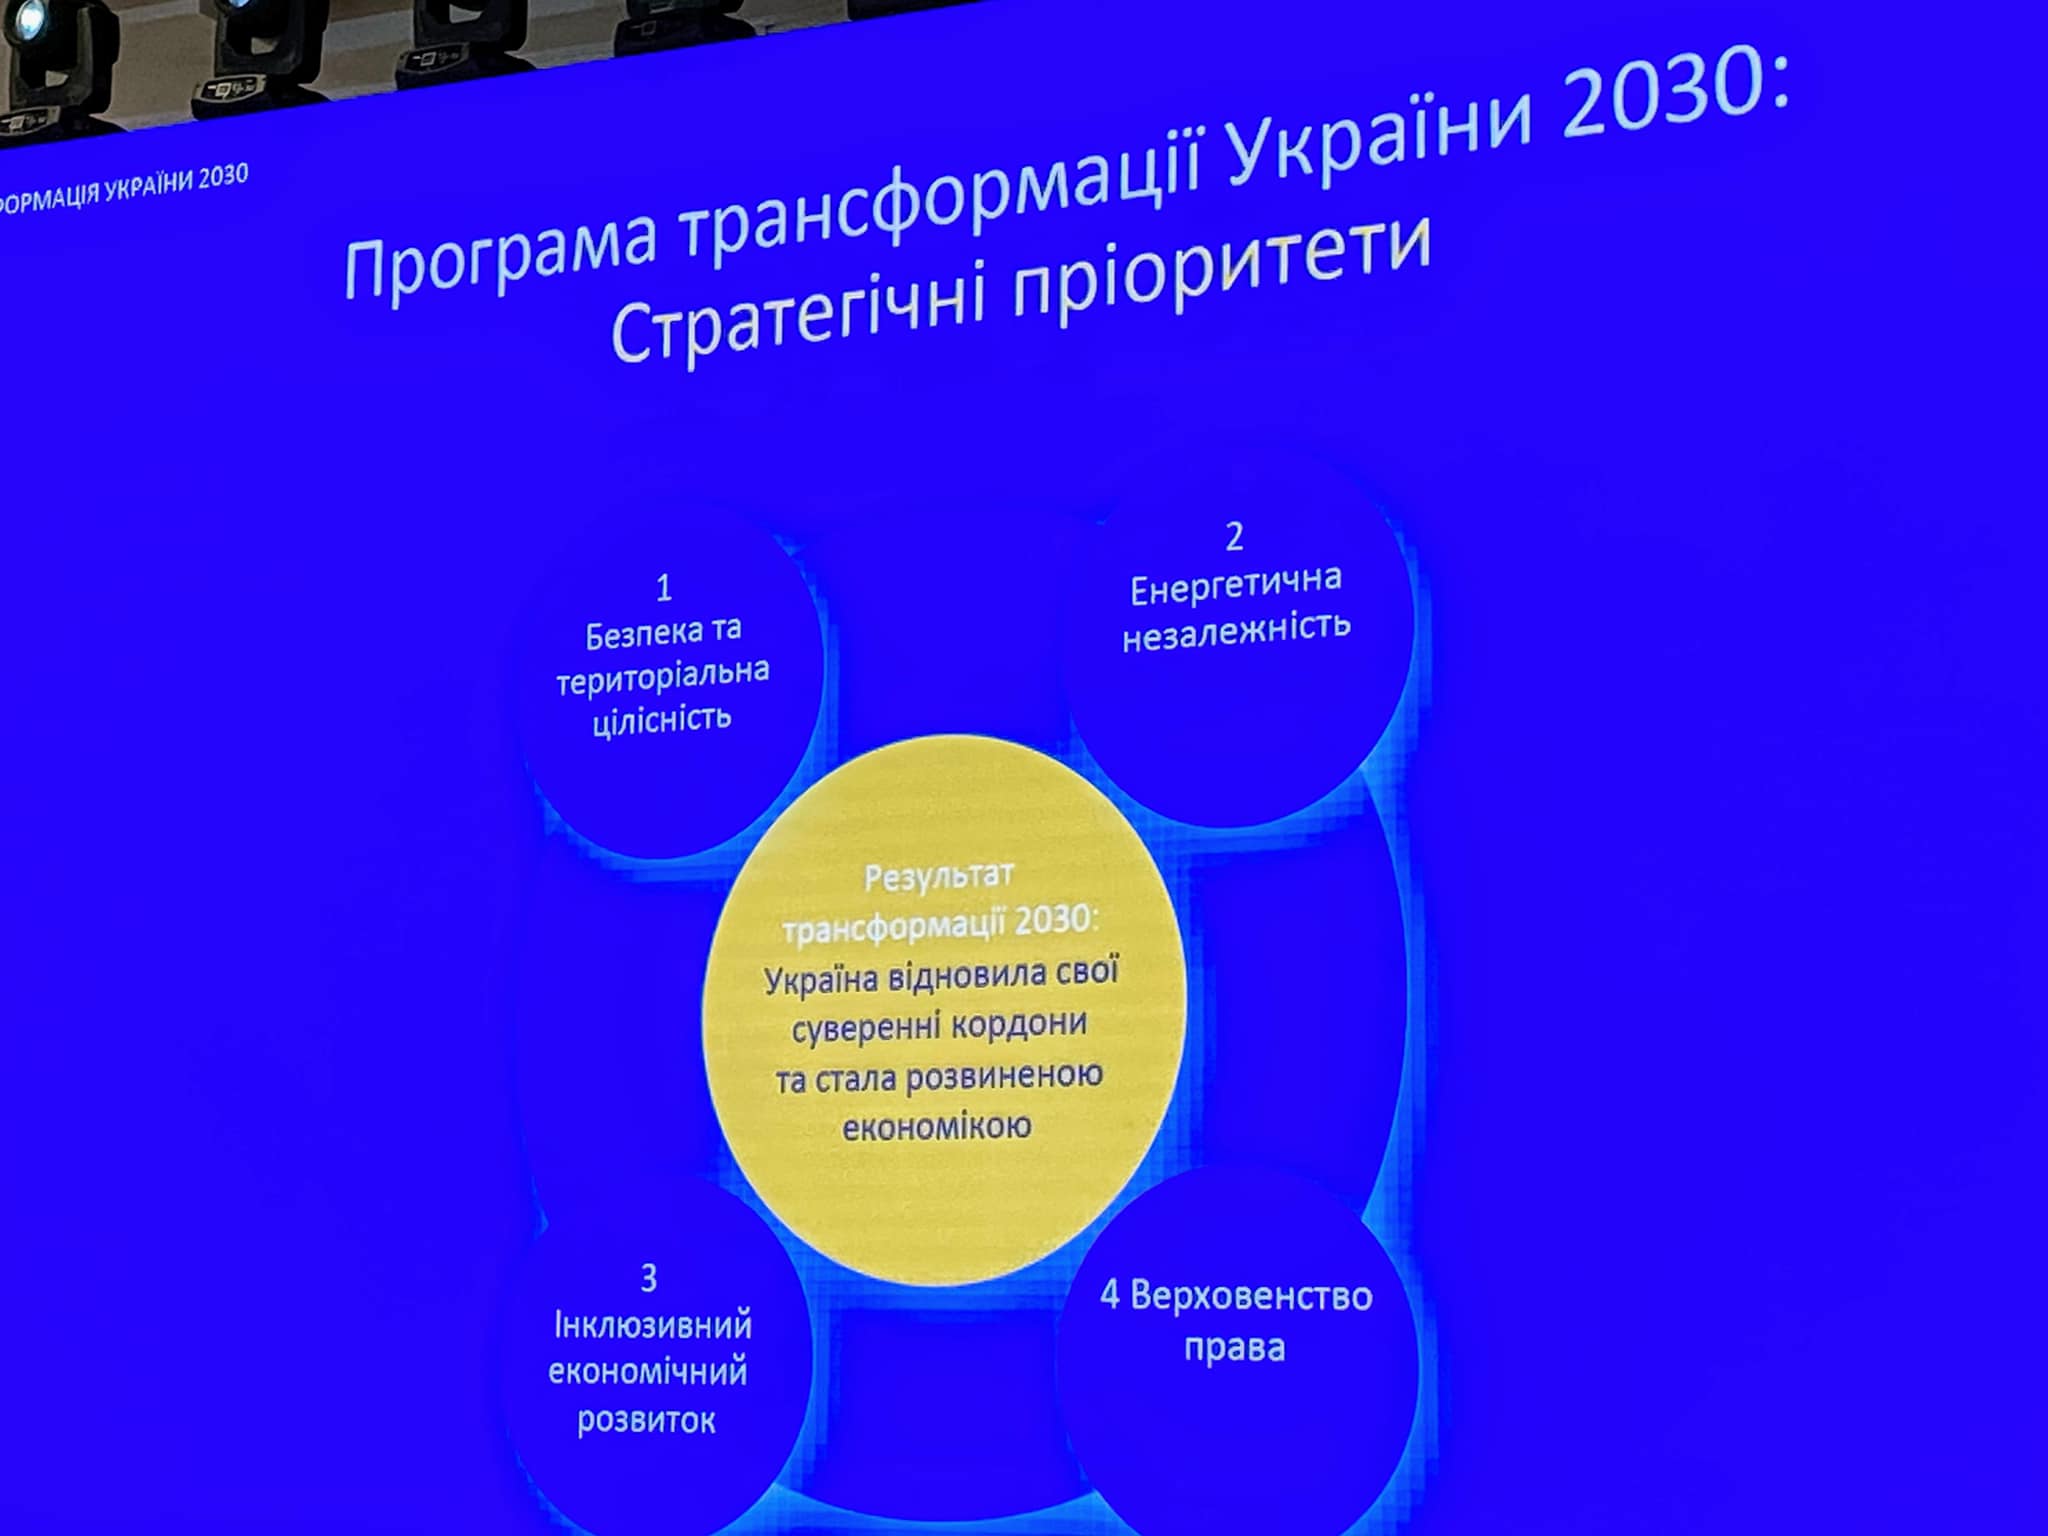 Команда Зеленского планирует освободить Крым и Донбасс до 2030 года